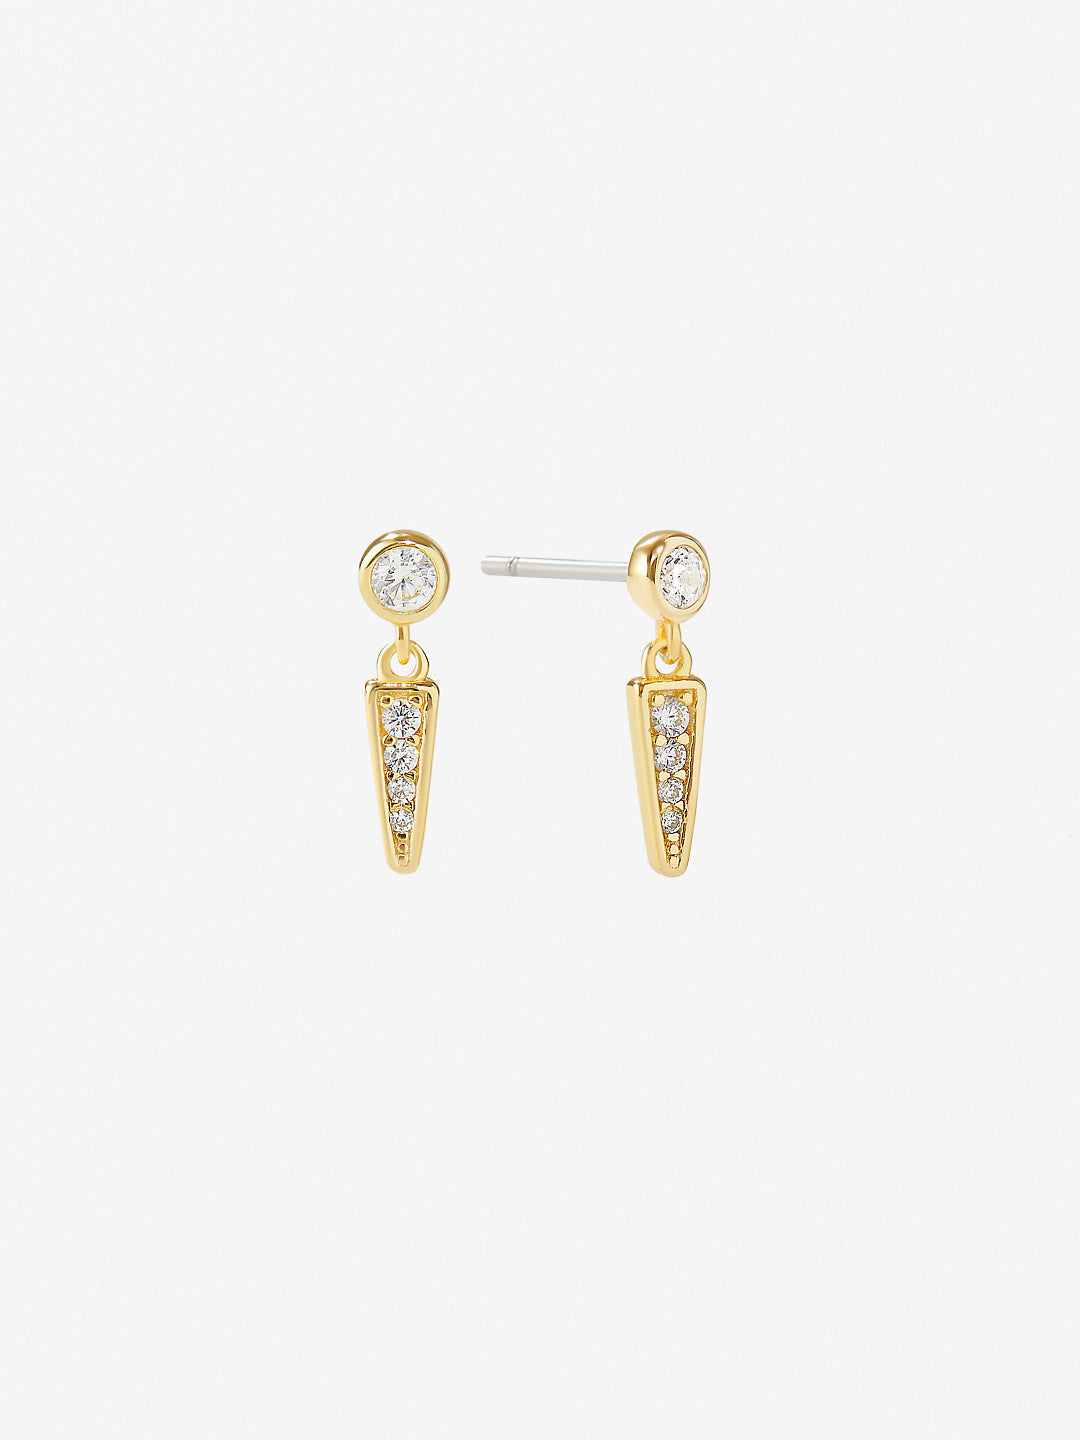 Ana Luisa Jewelry Earrings Stud Drop Earrings Nova Silver